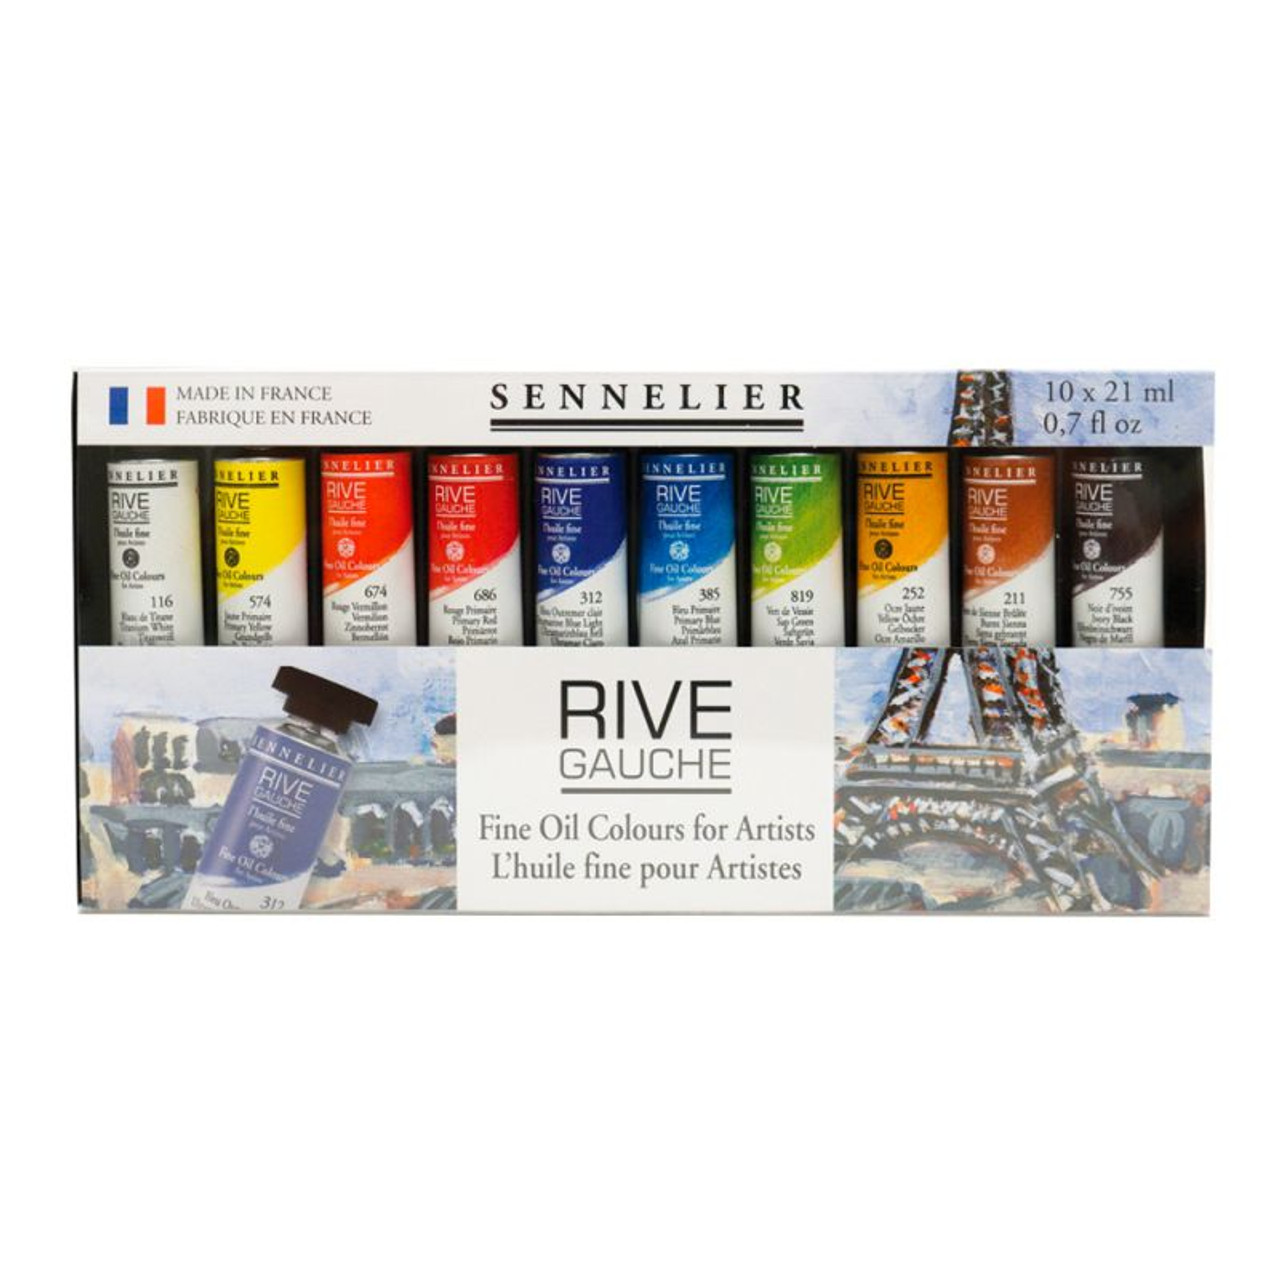 Sennelier Rive Gauche Oil Paints and Sets